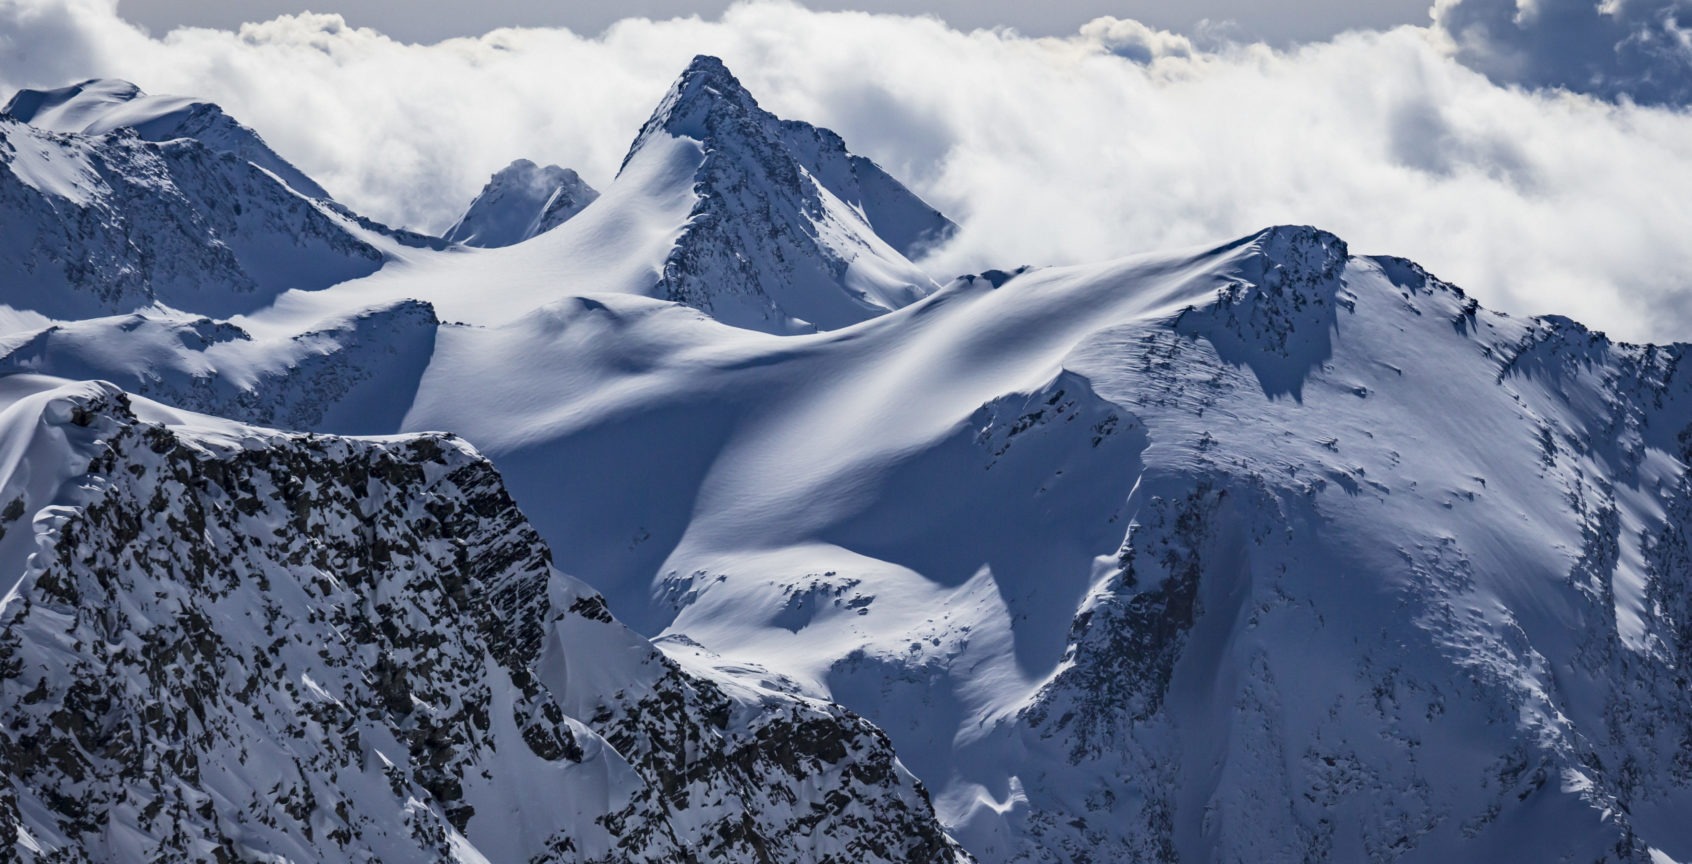 Mountain peaks in Great Canadian Heli-Skiing terrain